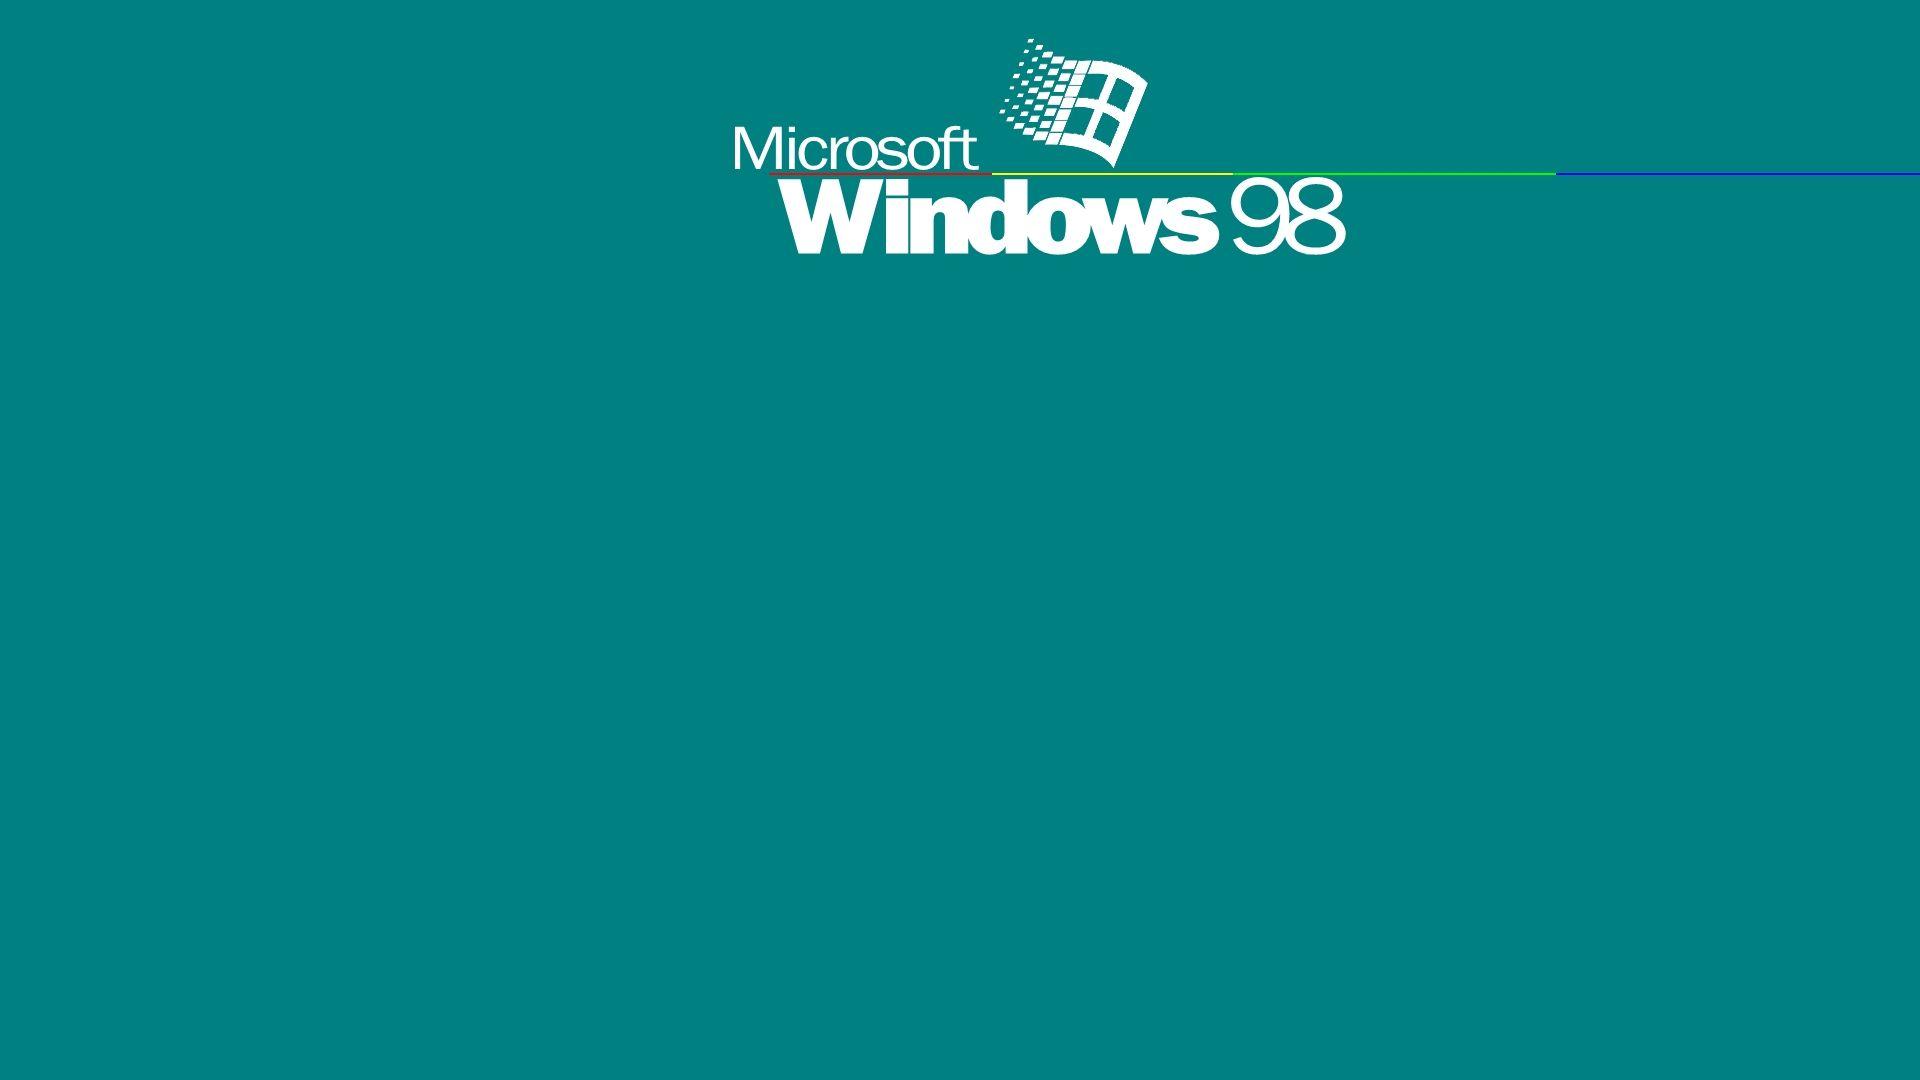 Hình nền Windows 98: Chỉ cần một cái nhìn vào hình nền Windows 98 này, bạn sẽ ngay lập tức cảm thấy được sự quen thuộc và những kỷ niệm thời con rùa đang ùa về. Điểm mấu chốt là nó vẫn đẹp và gợi nhớ như ngày xưa đấy.